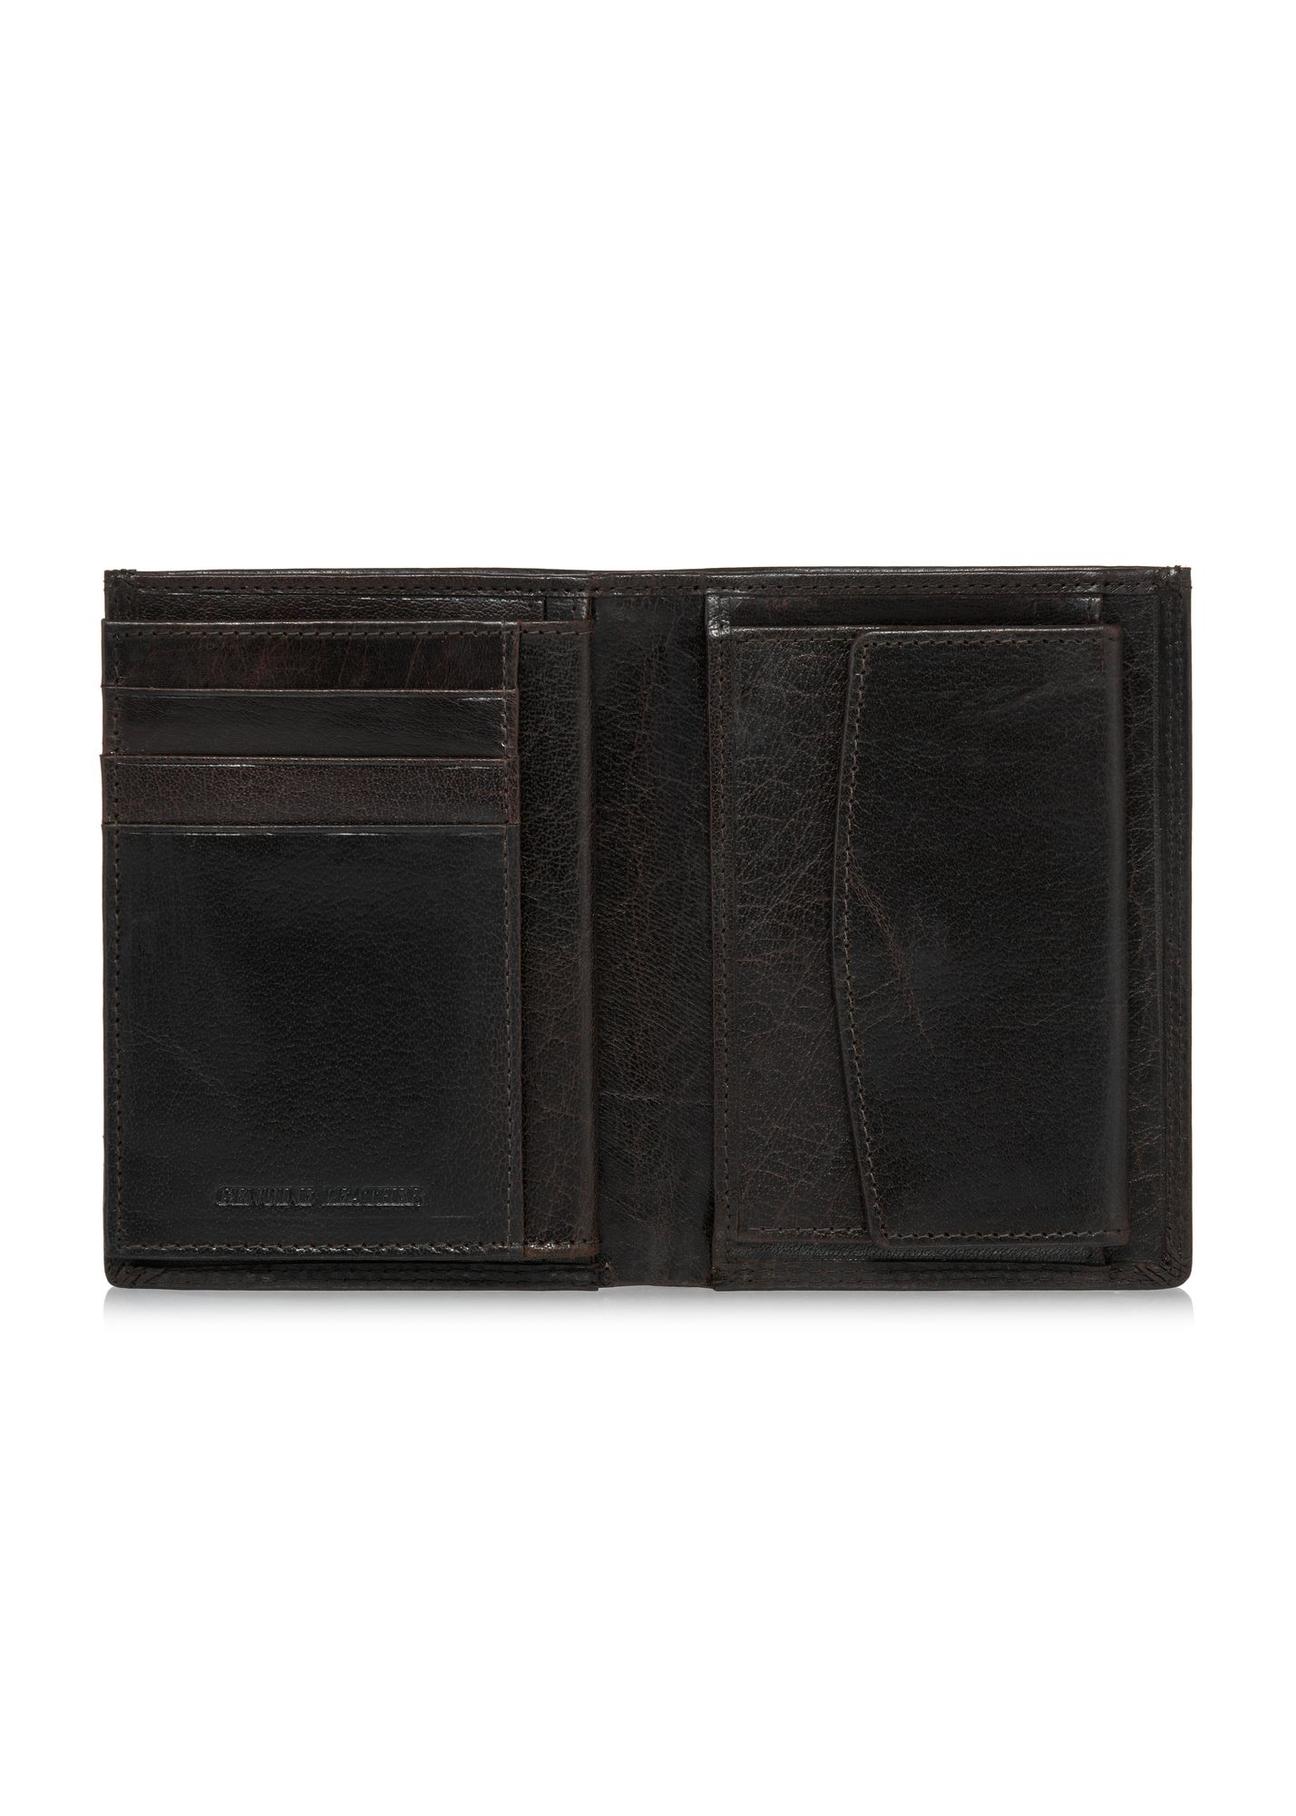 Skórzany niezapinany brązowy portfel męski PORMS-0554-89(W24)